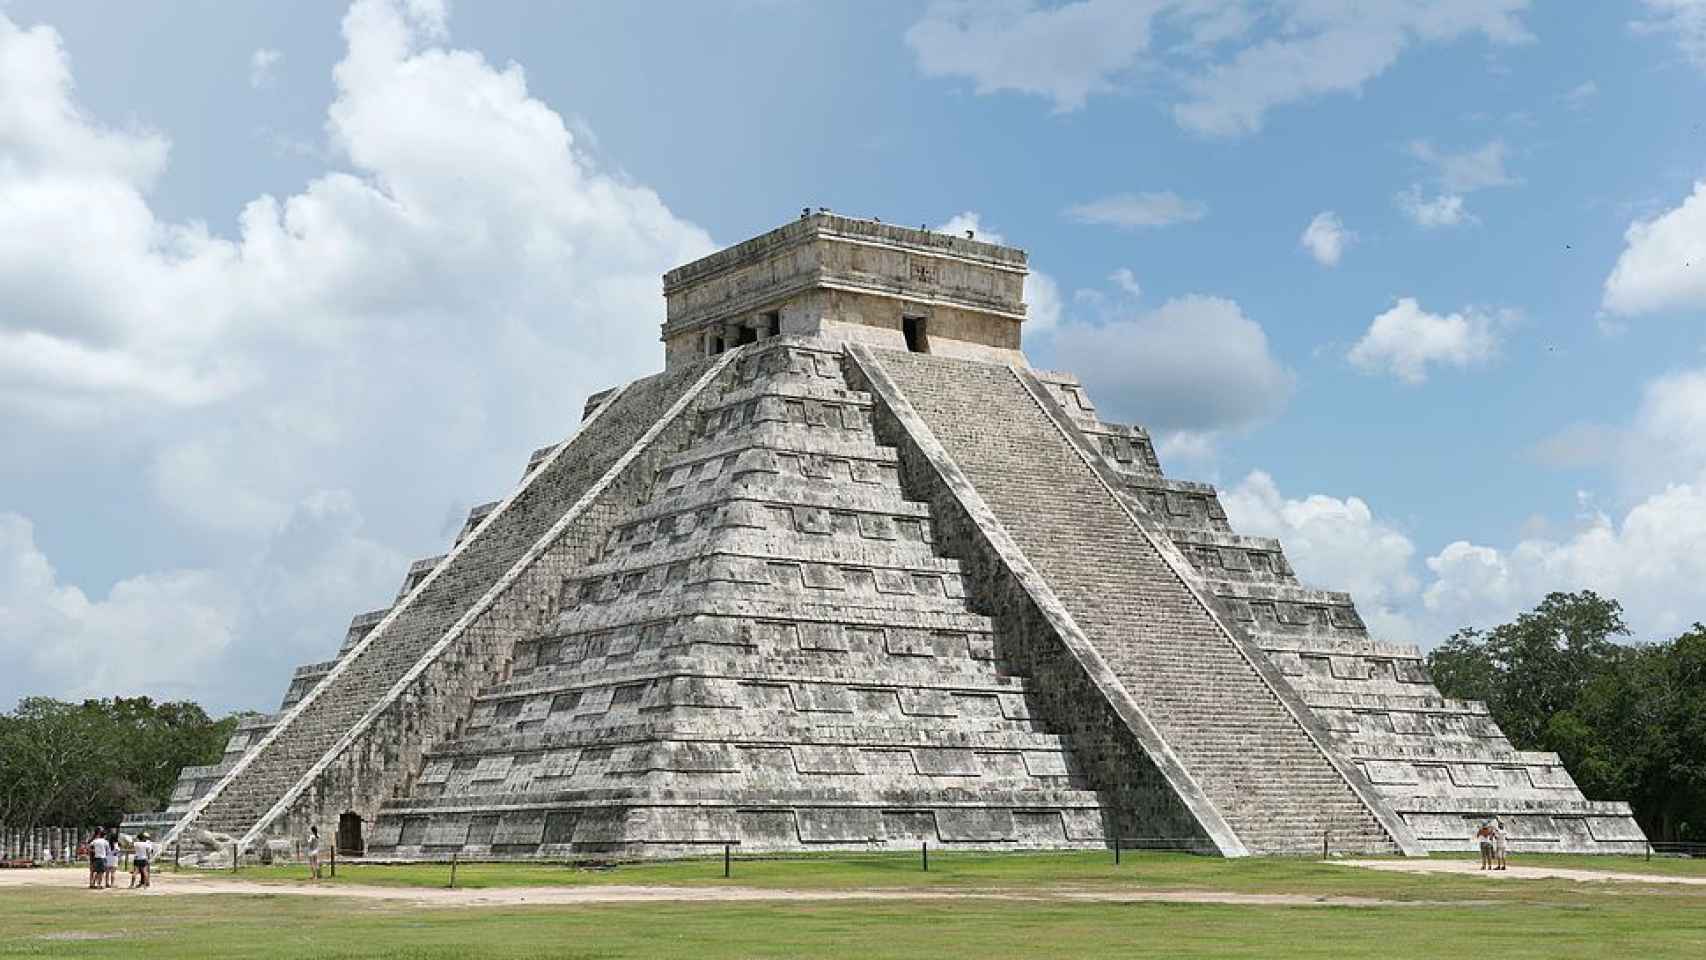 La pirámide de Kukulkán, uno de los símbolos de la cultura maya.